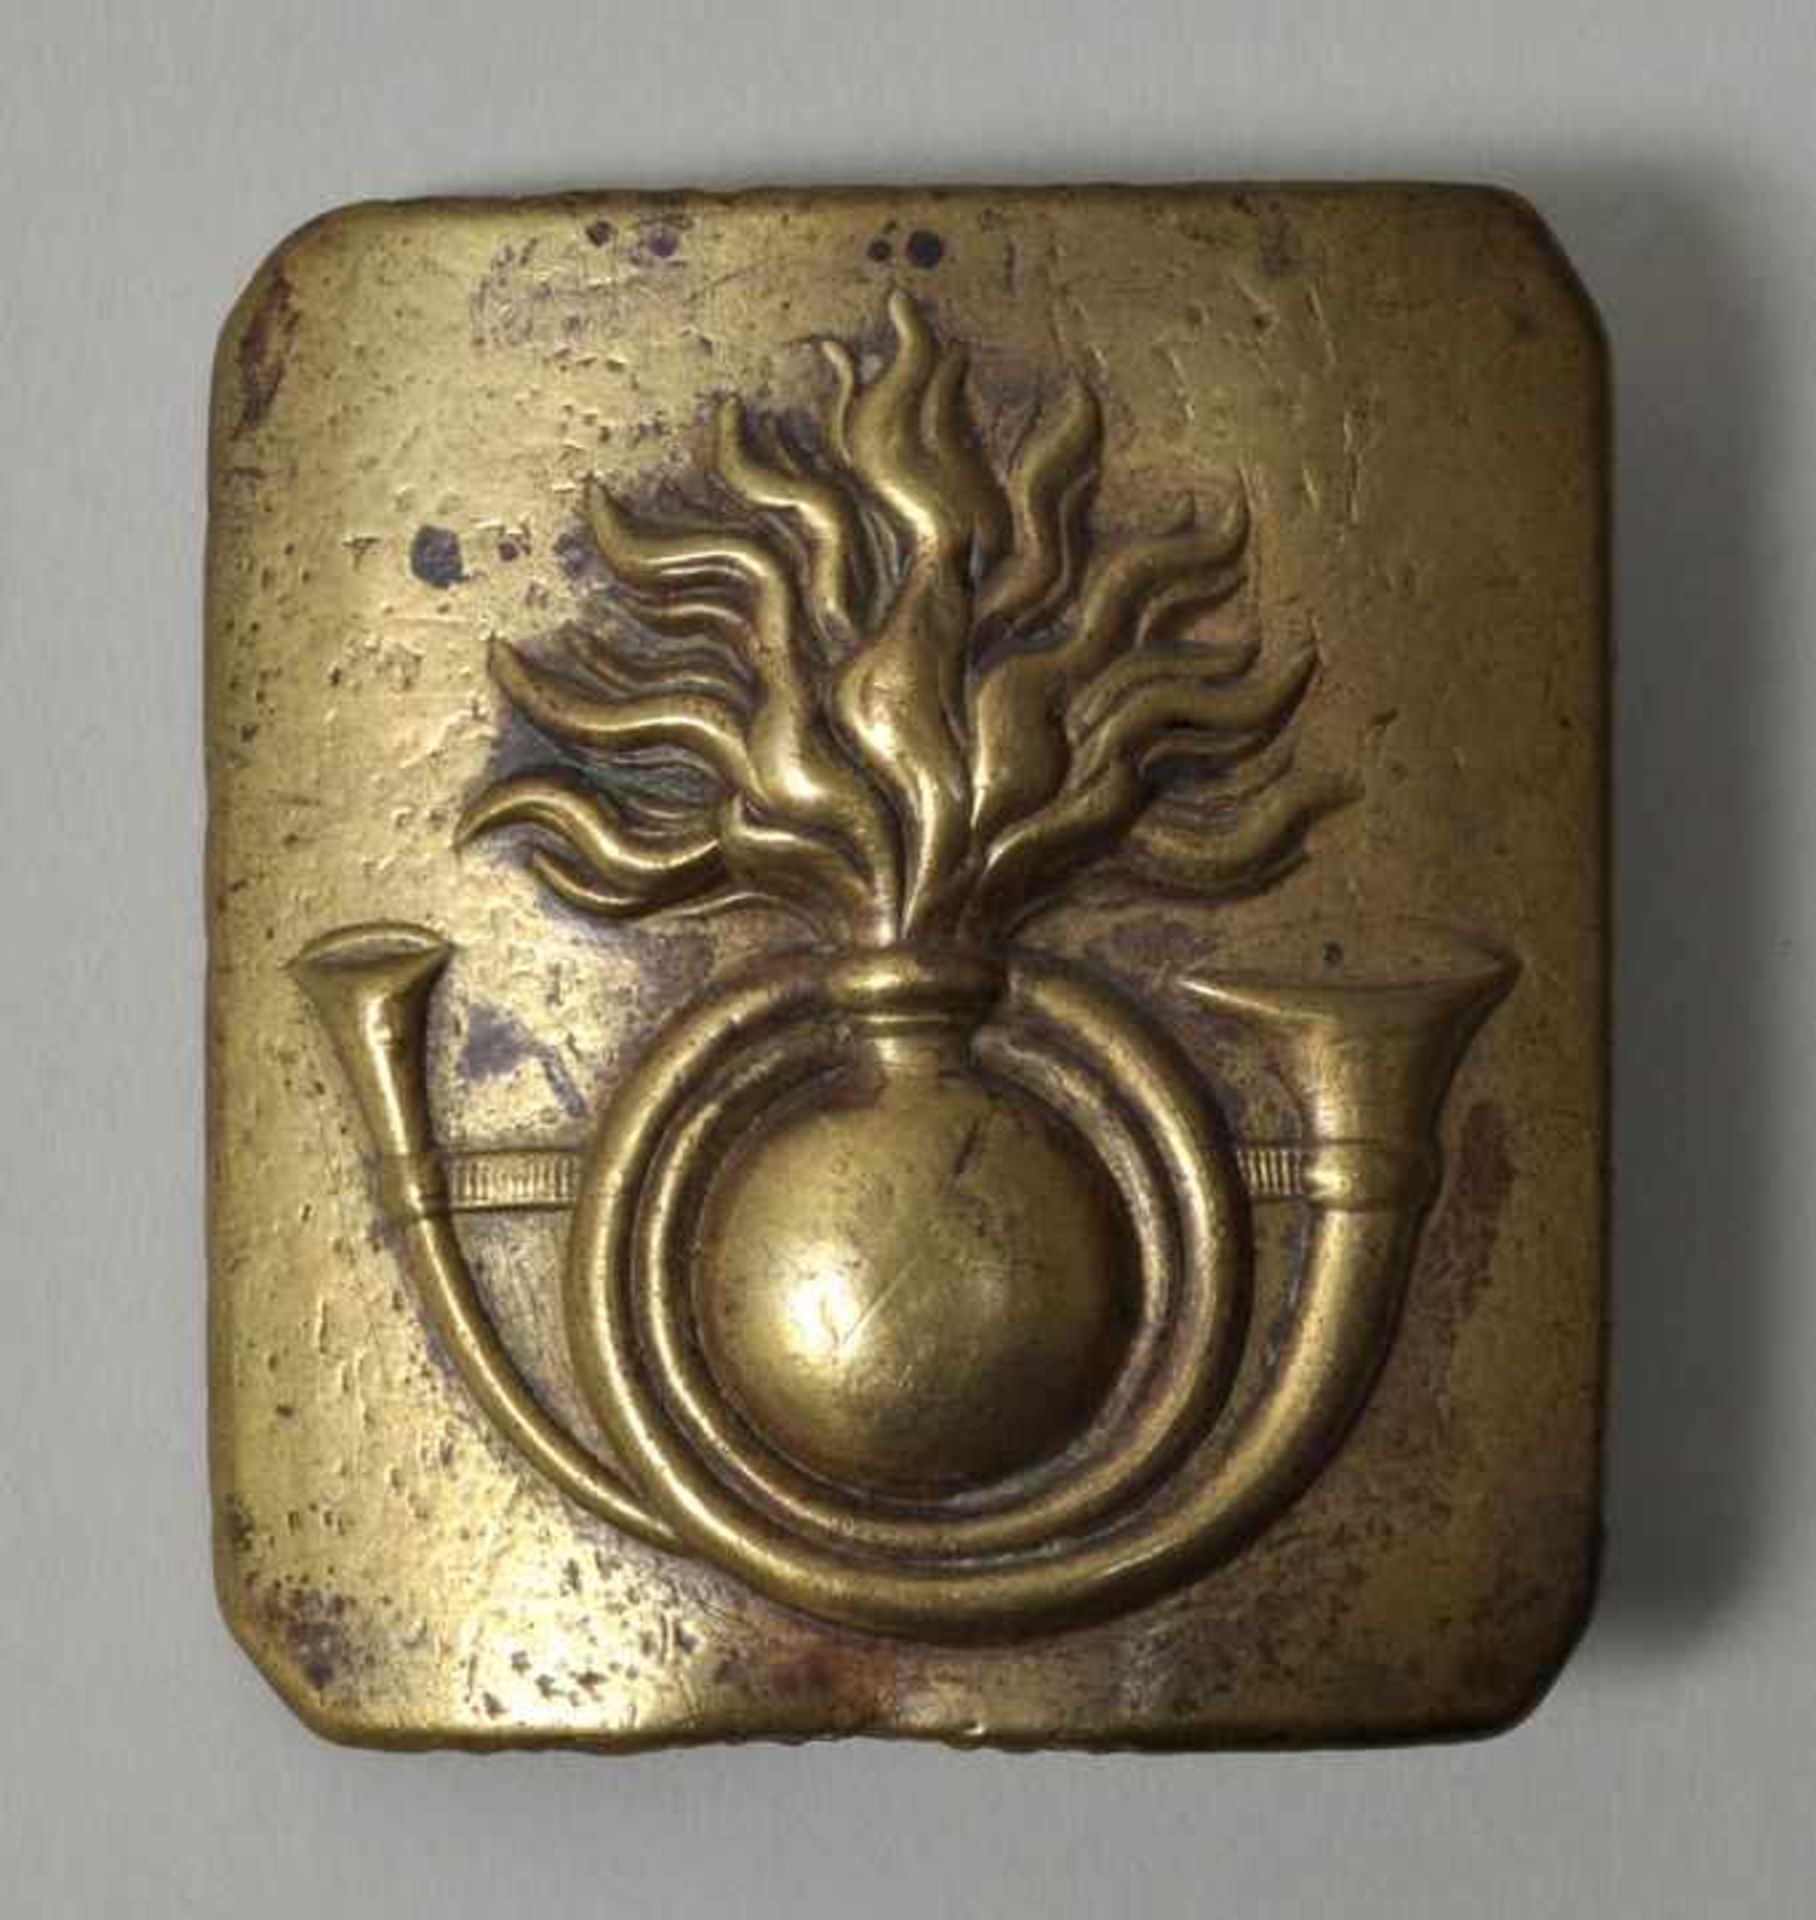 Militärisches Koppelschloss, Frankreich, 19. Jh.Messing, achteckige Form, reliefiertes Motiv